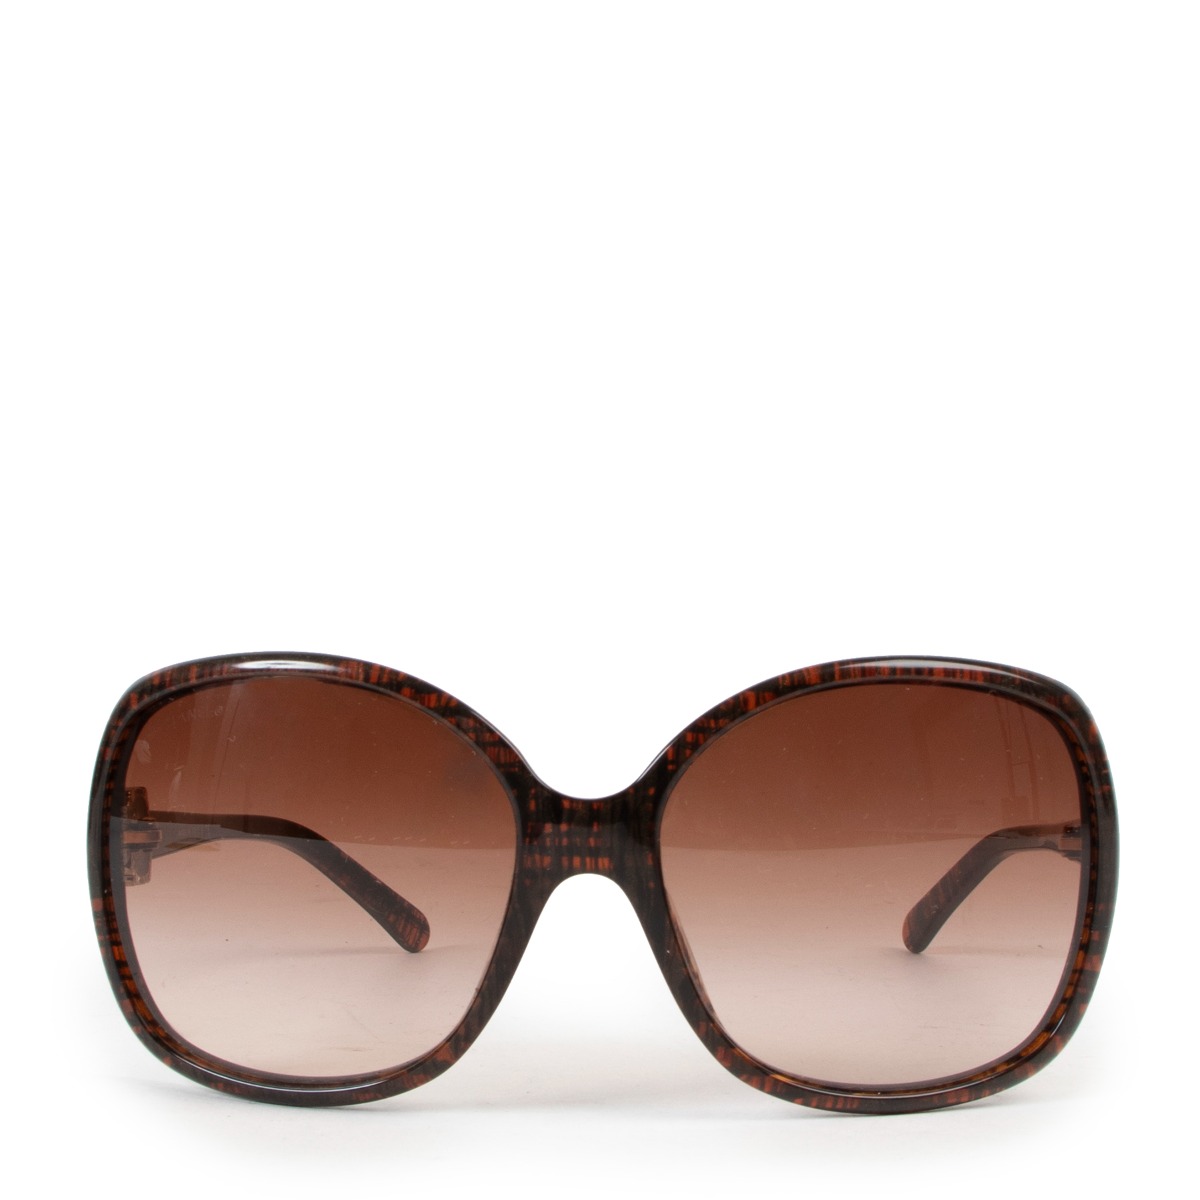 Sunglasses Chanel Brown in Plastic - 29019608